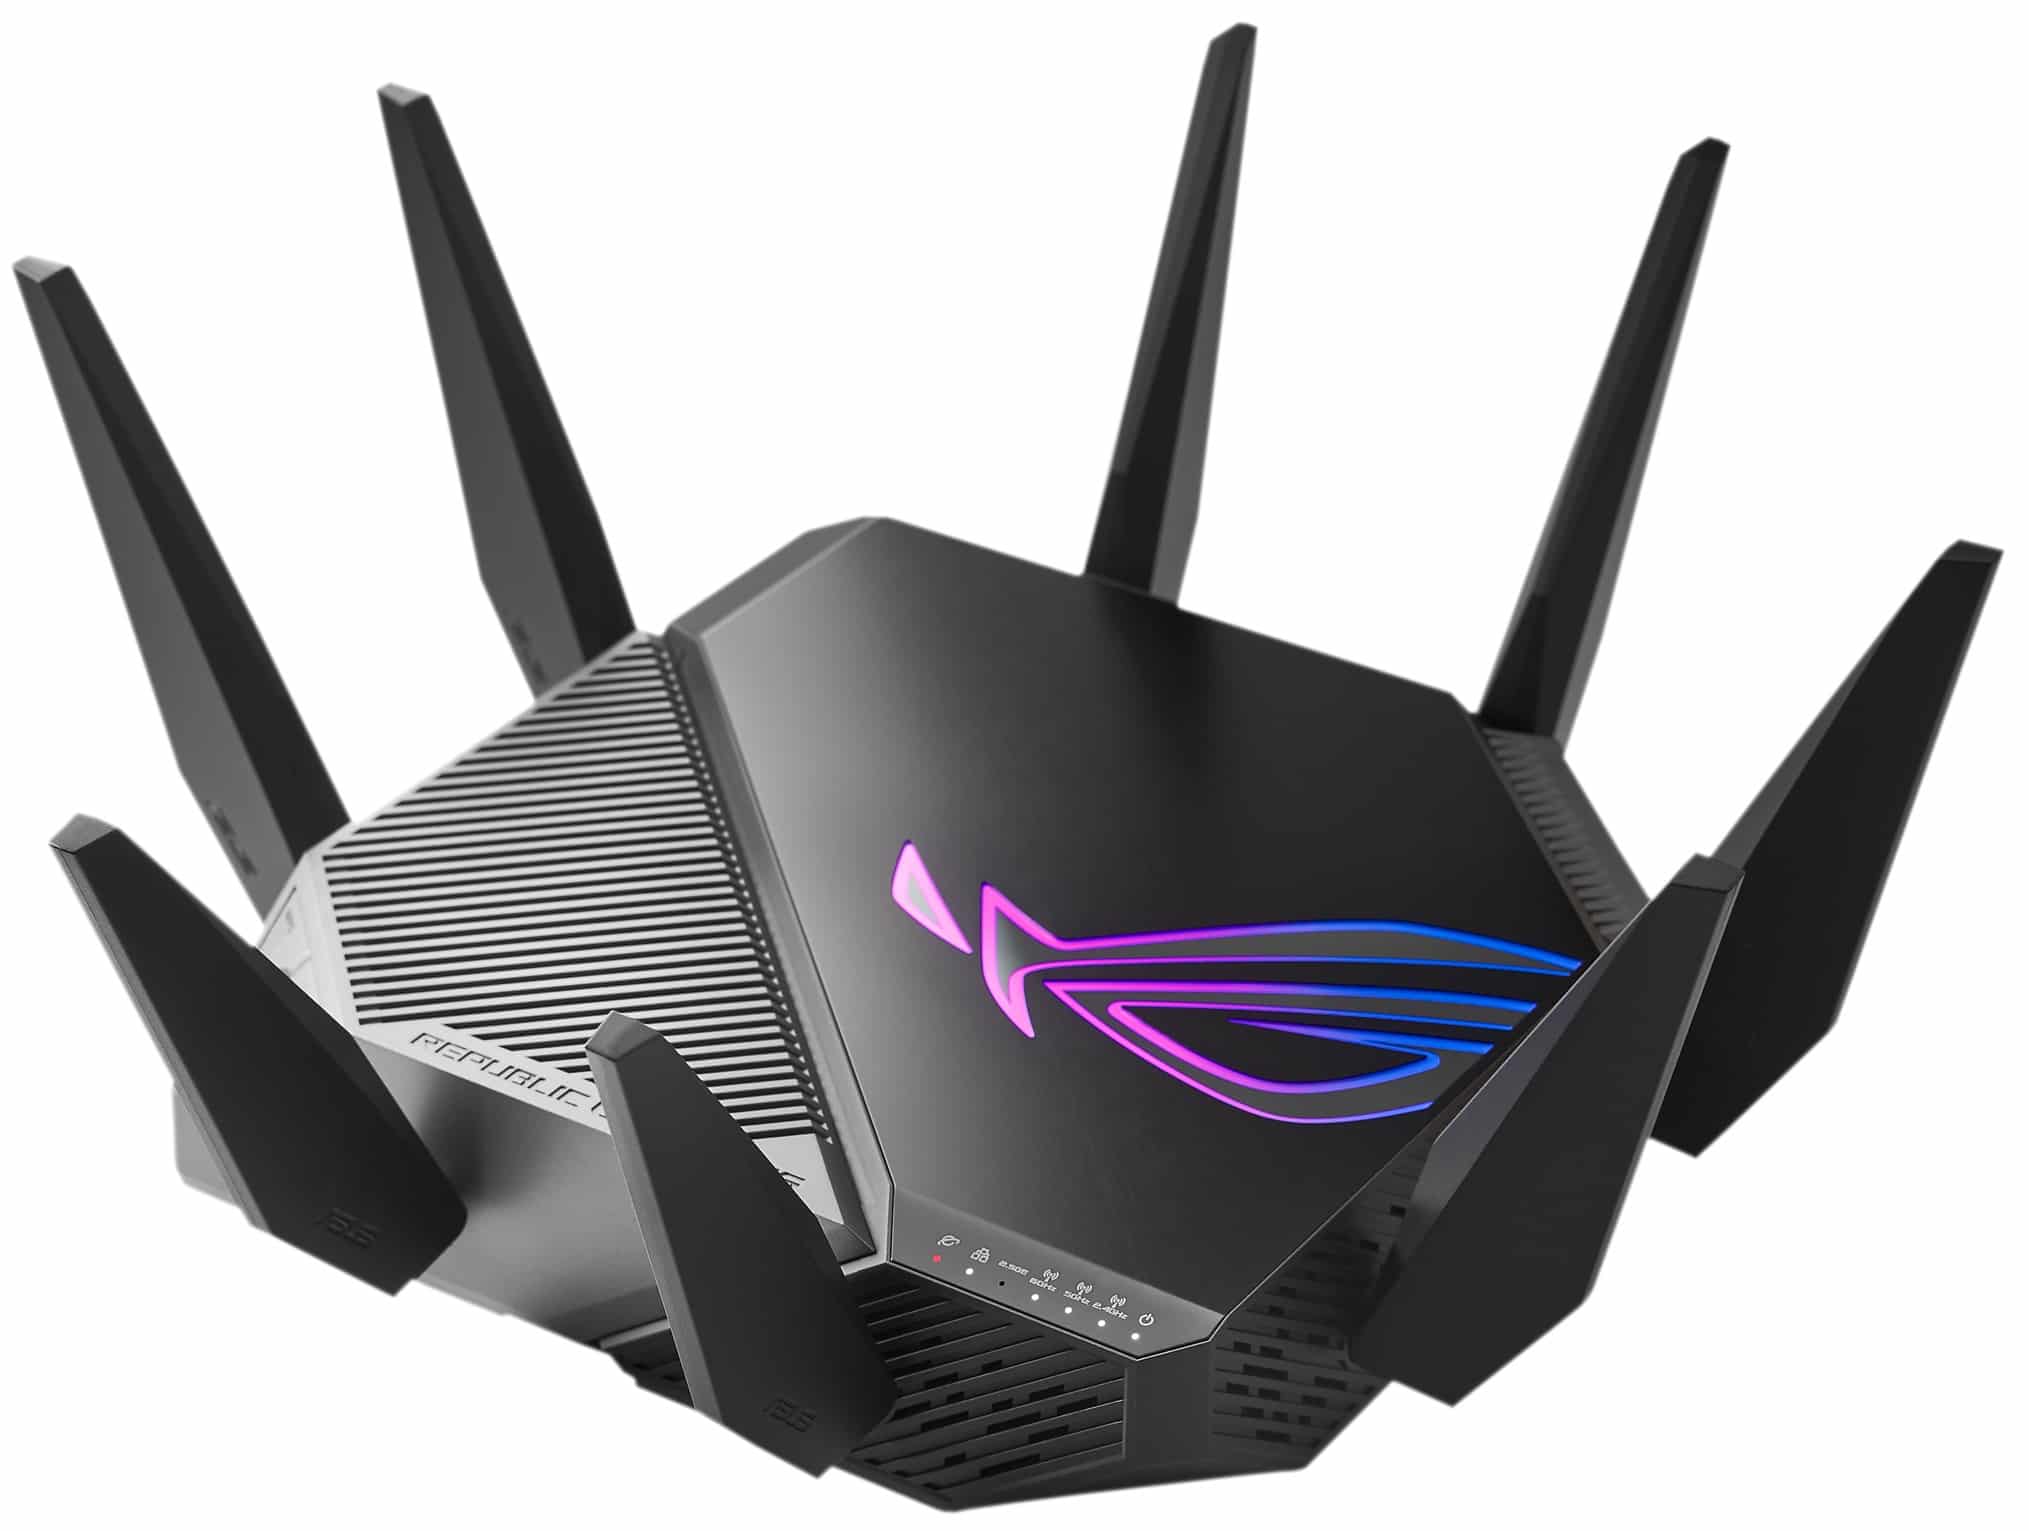 ASUS ROG ra mắt router Rapture GT-AXE11000 trang bị Wi-Fi 6E đầu tiên trên thế giới